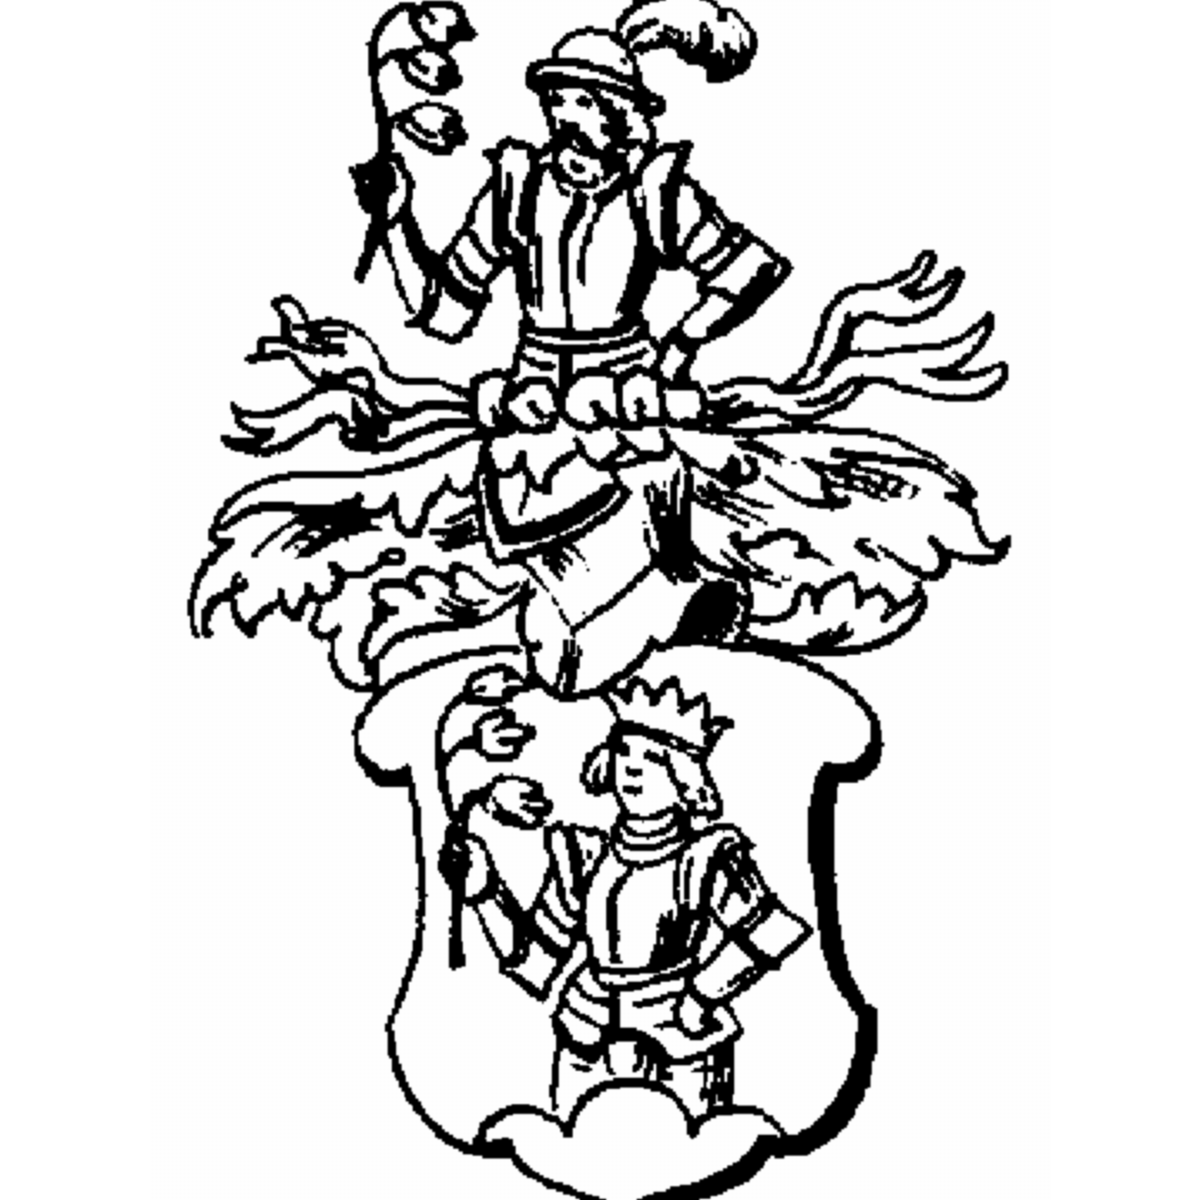 Wappen der Familie Raudi